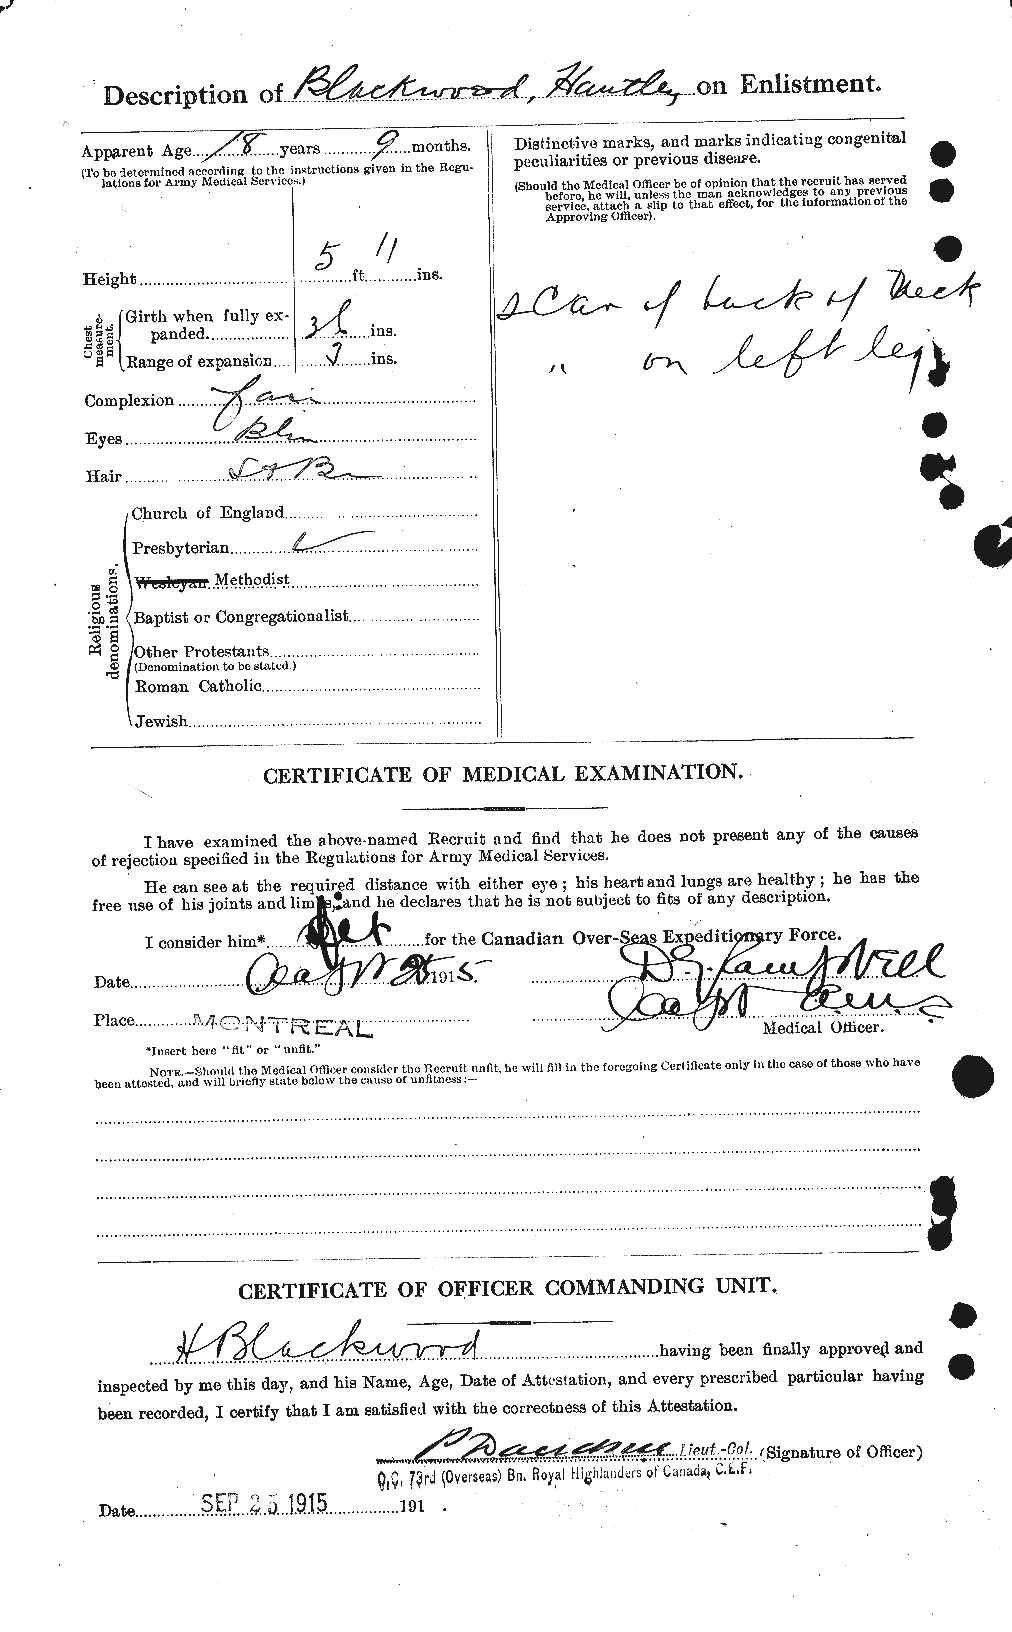 Dossiers du Personnel de la Première Guerre mondiale - CEC 244555b